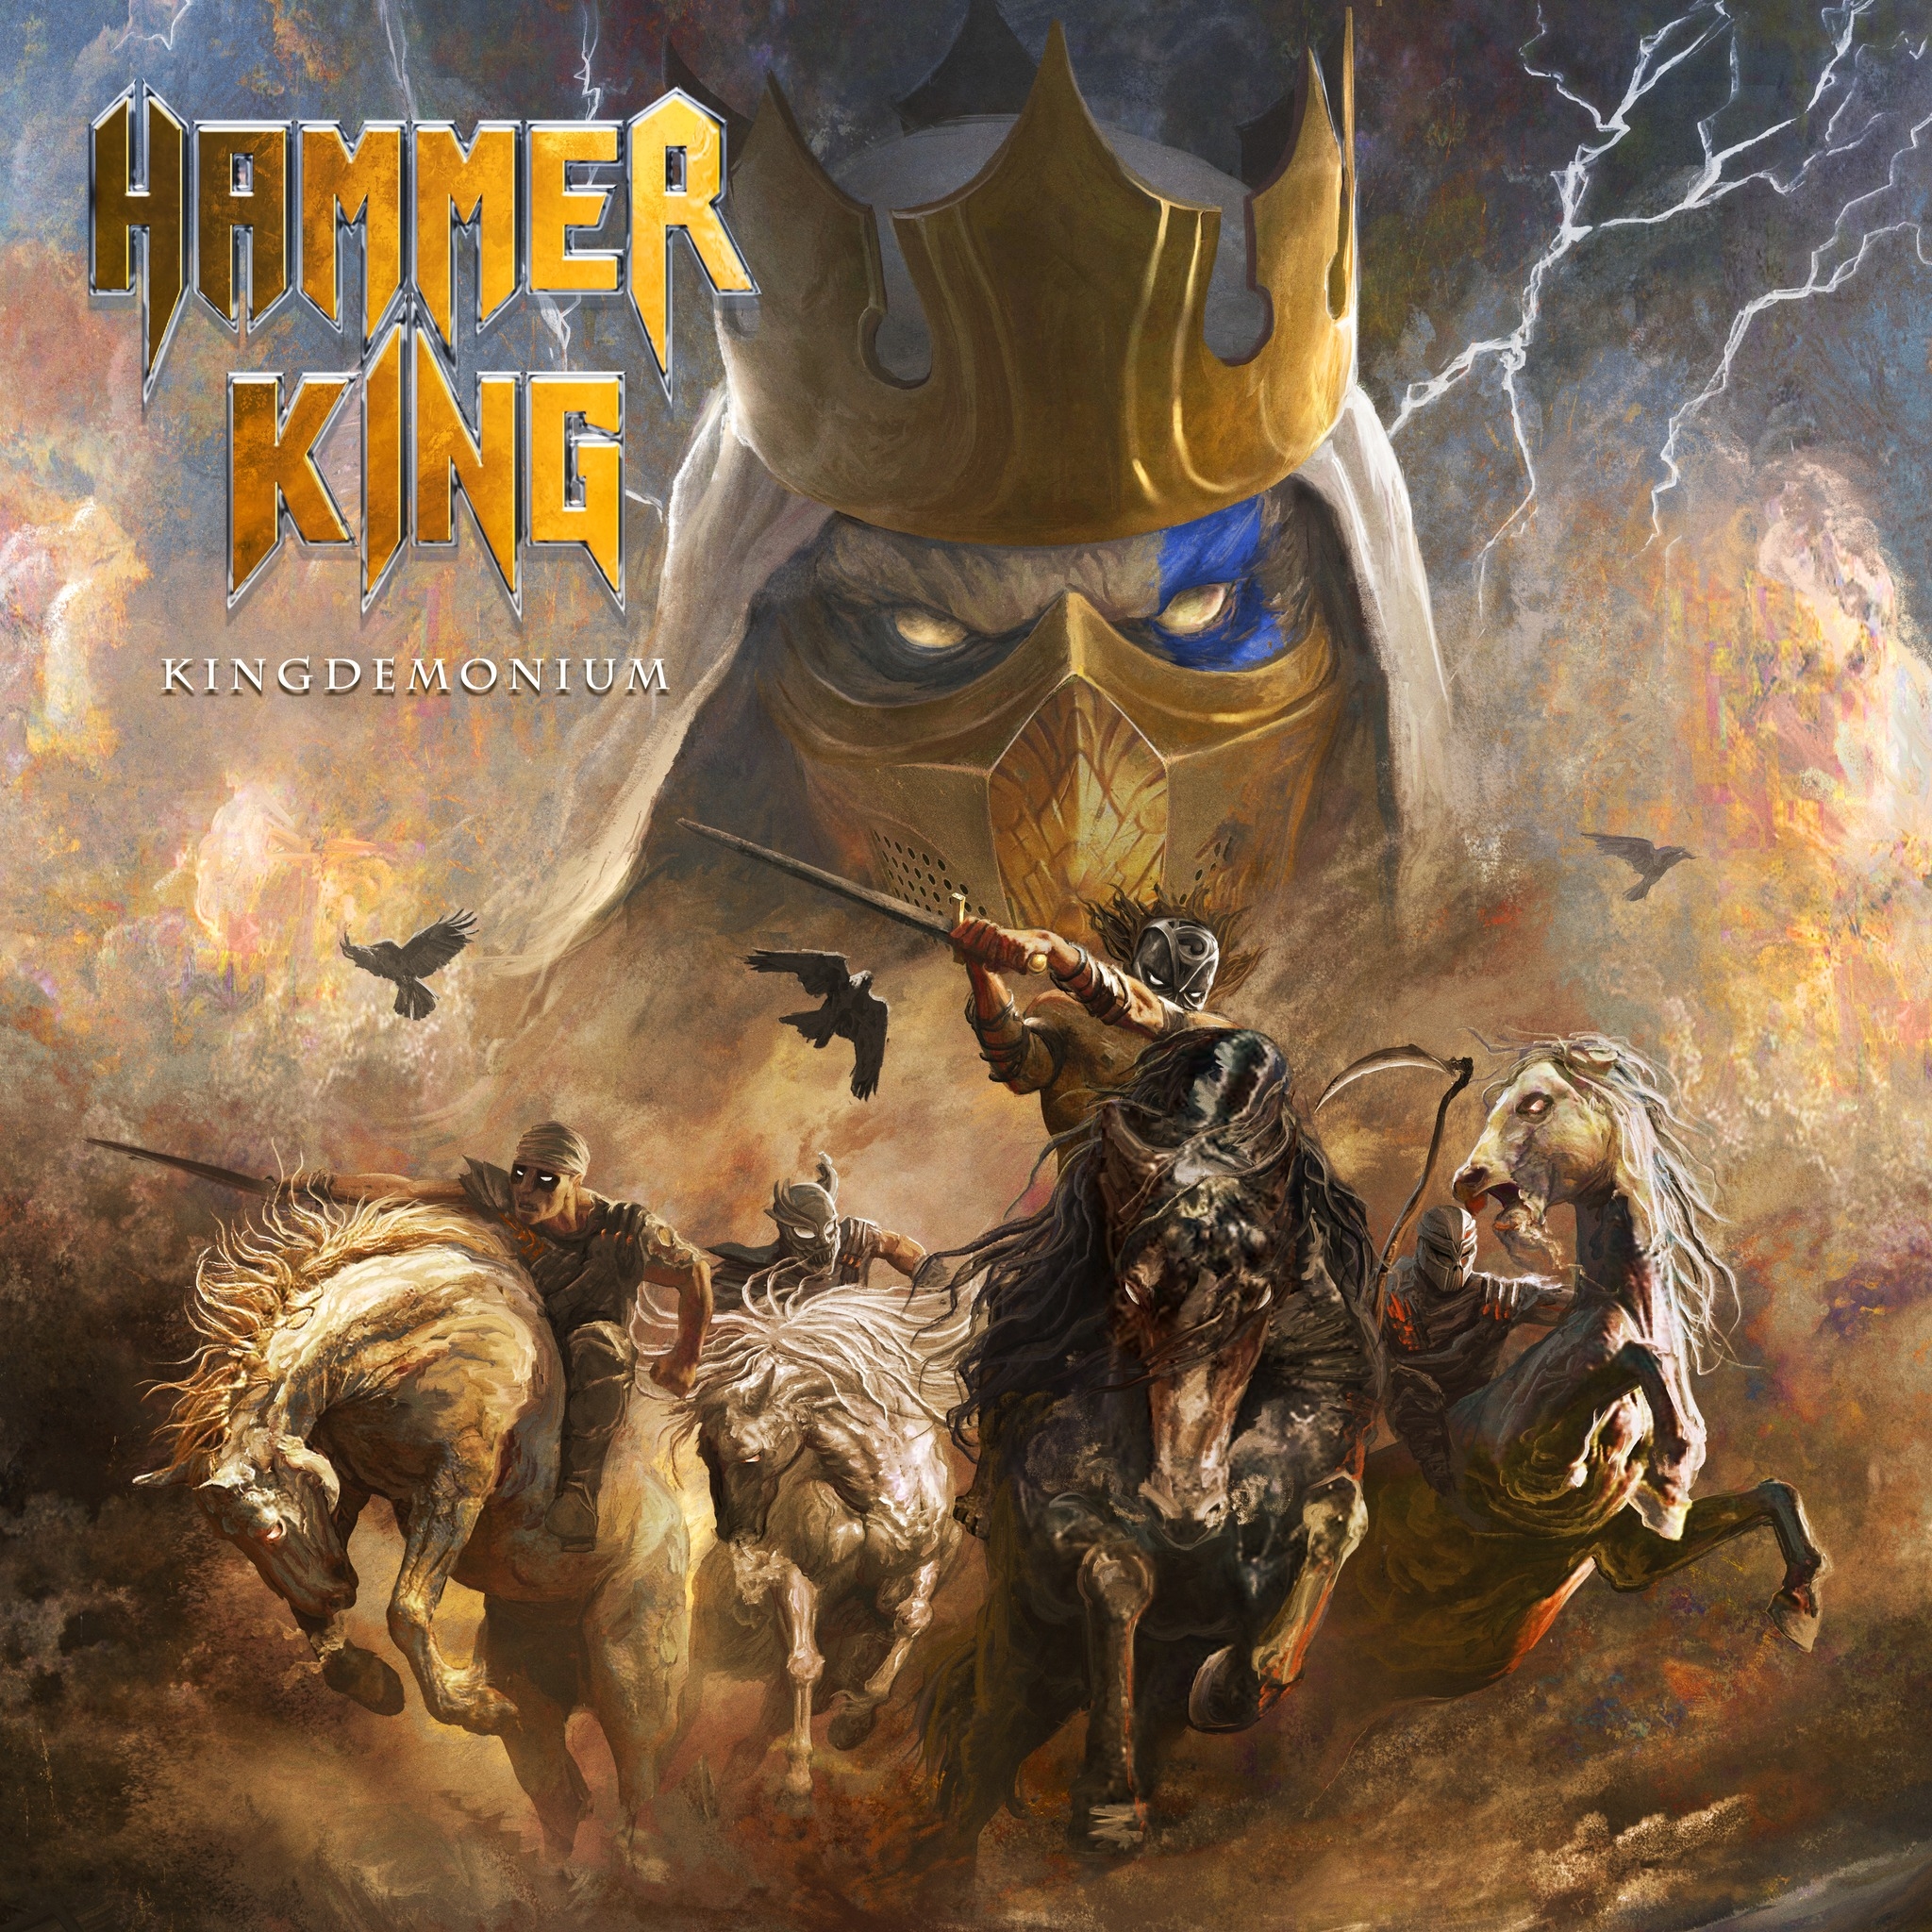 [Review] True/Power Metal en estado puro, vuelven Hammer King con “Kingdemonium”